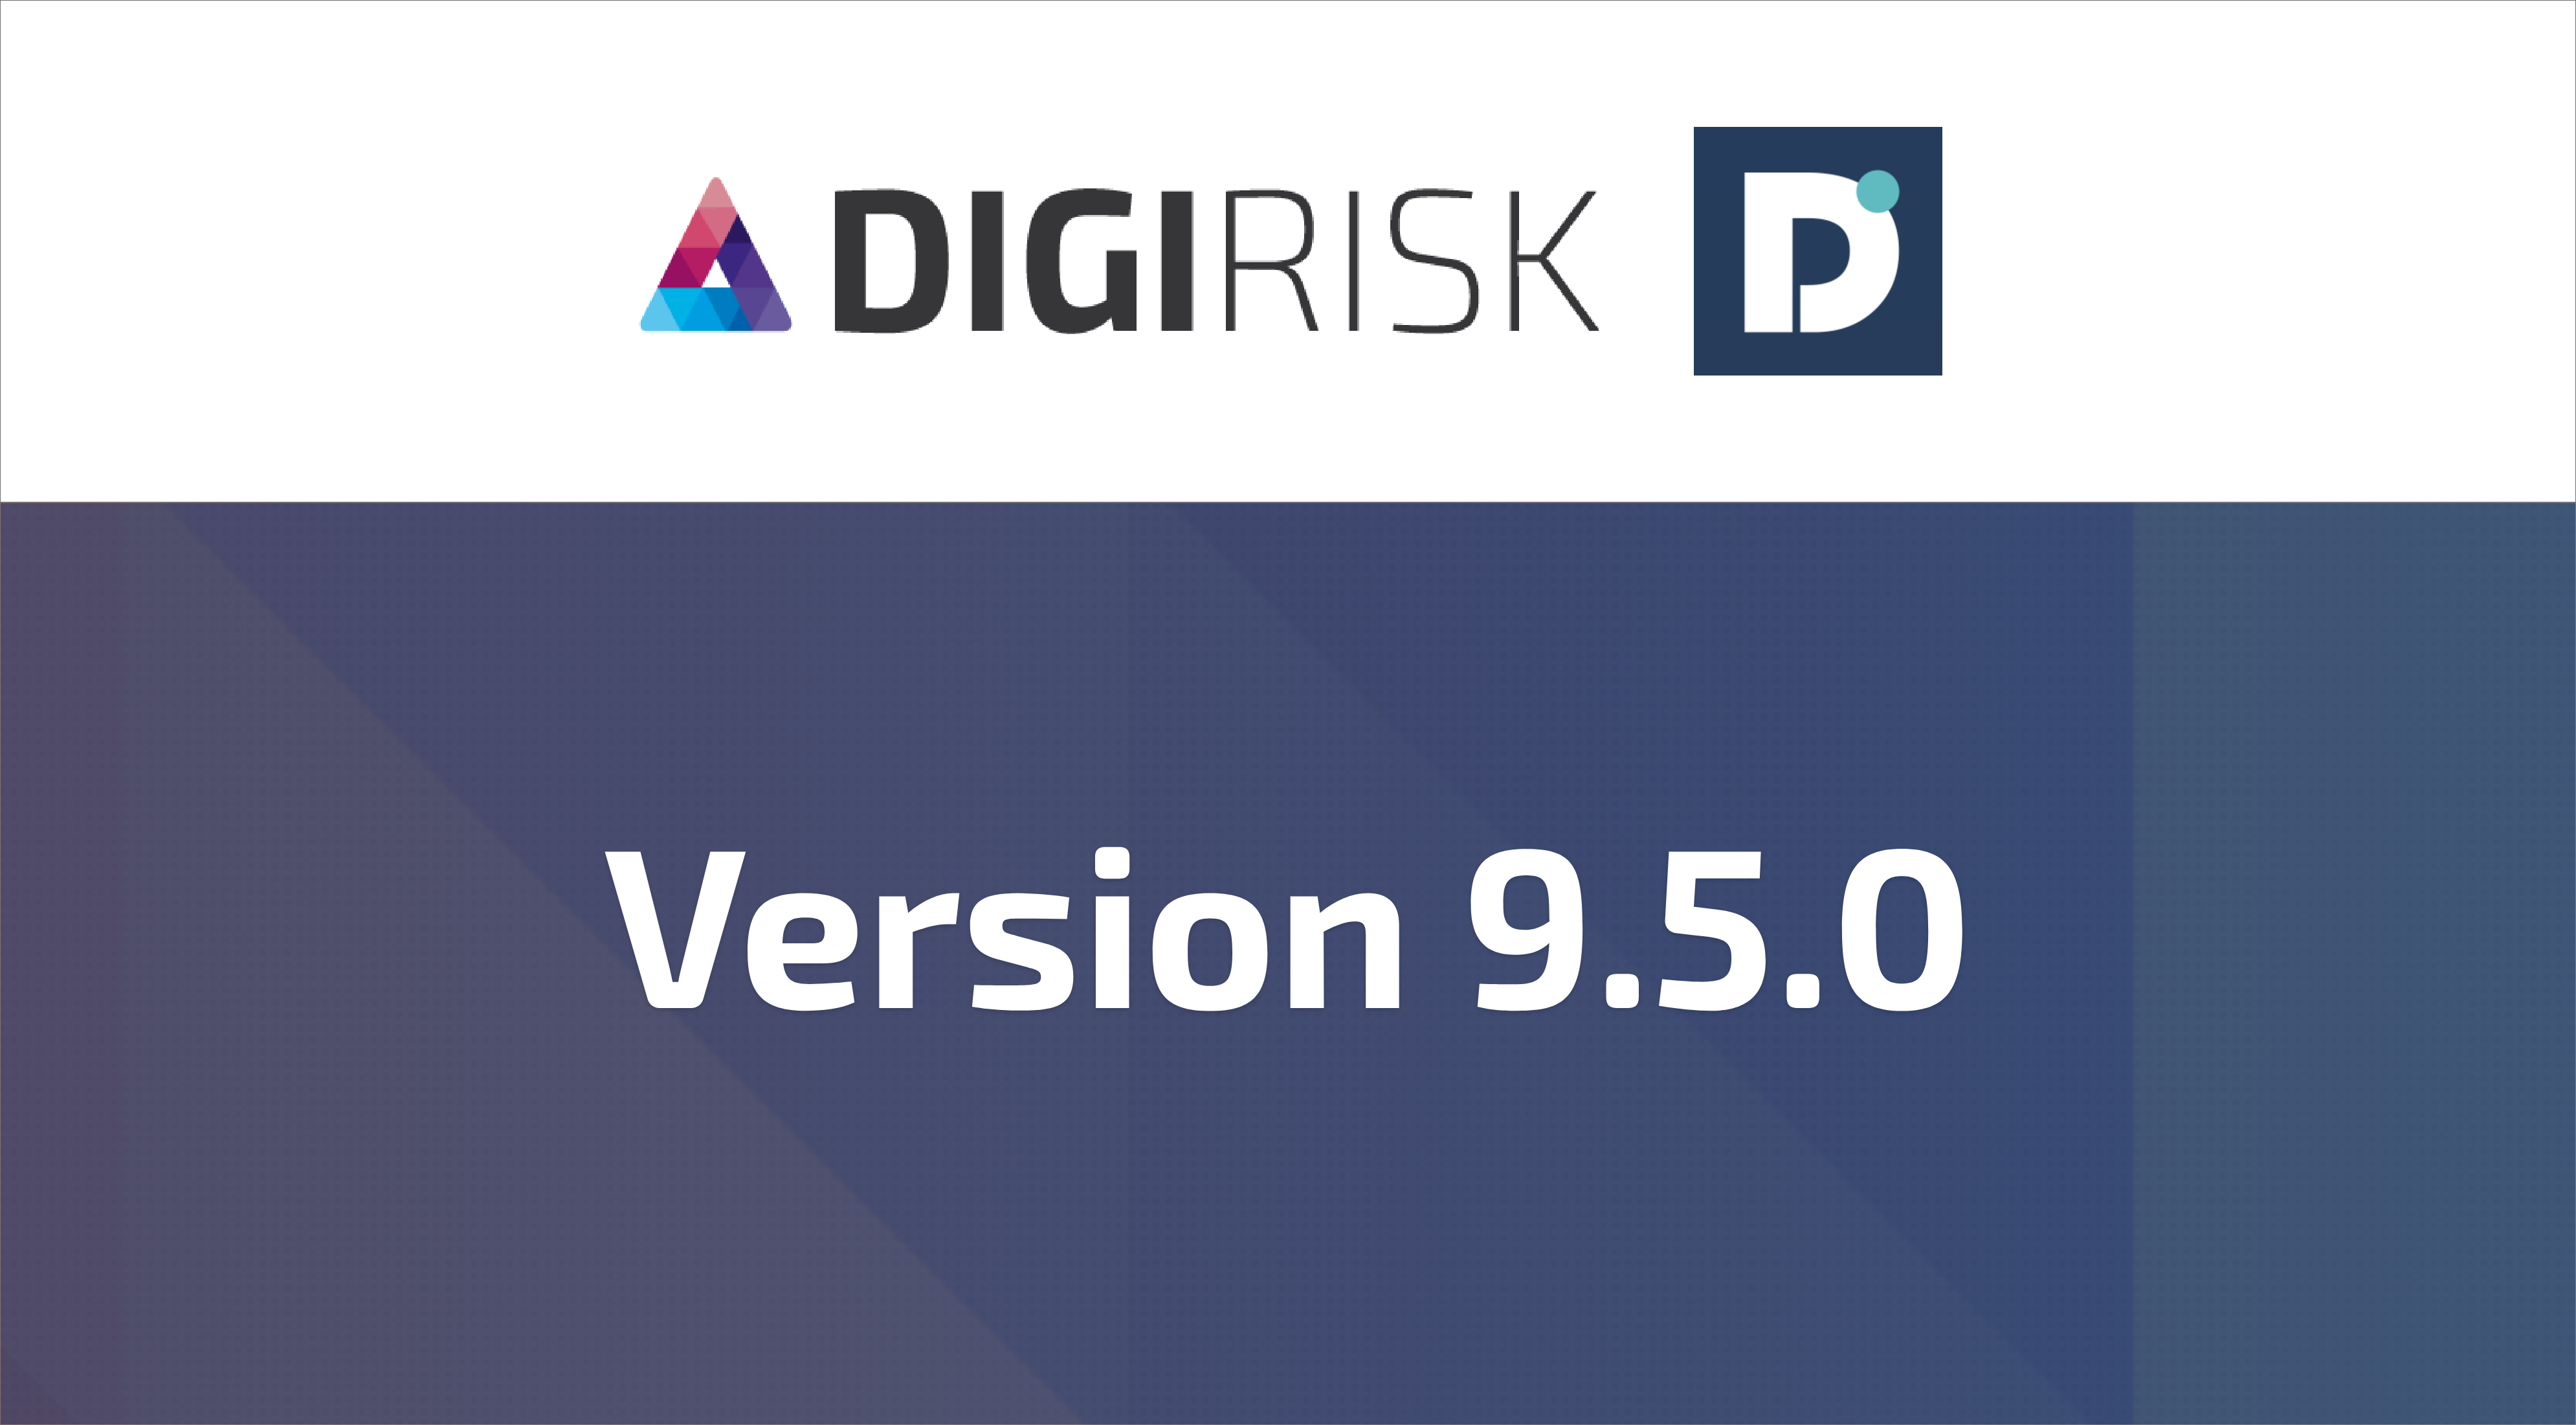 DigiRisk version 9.5.0